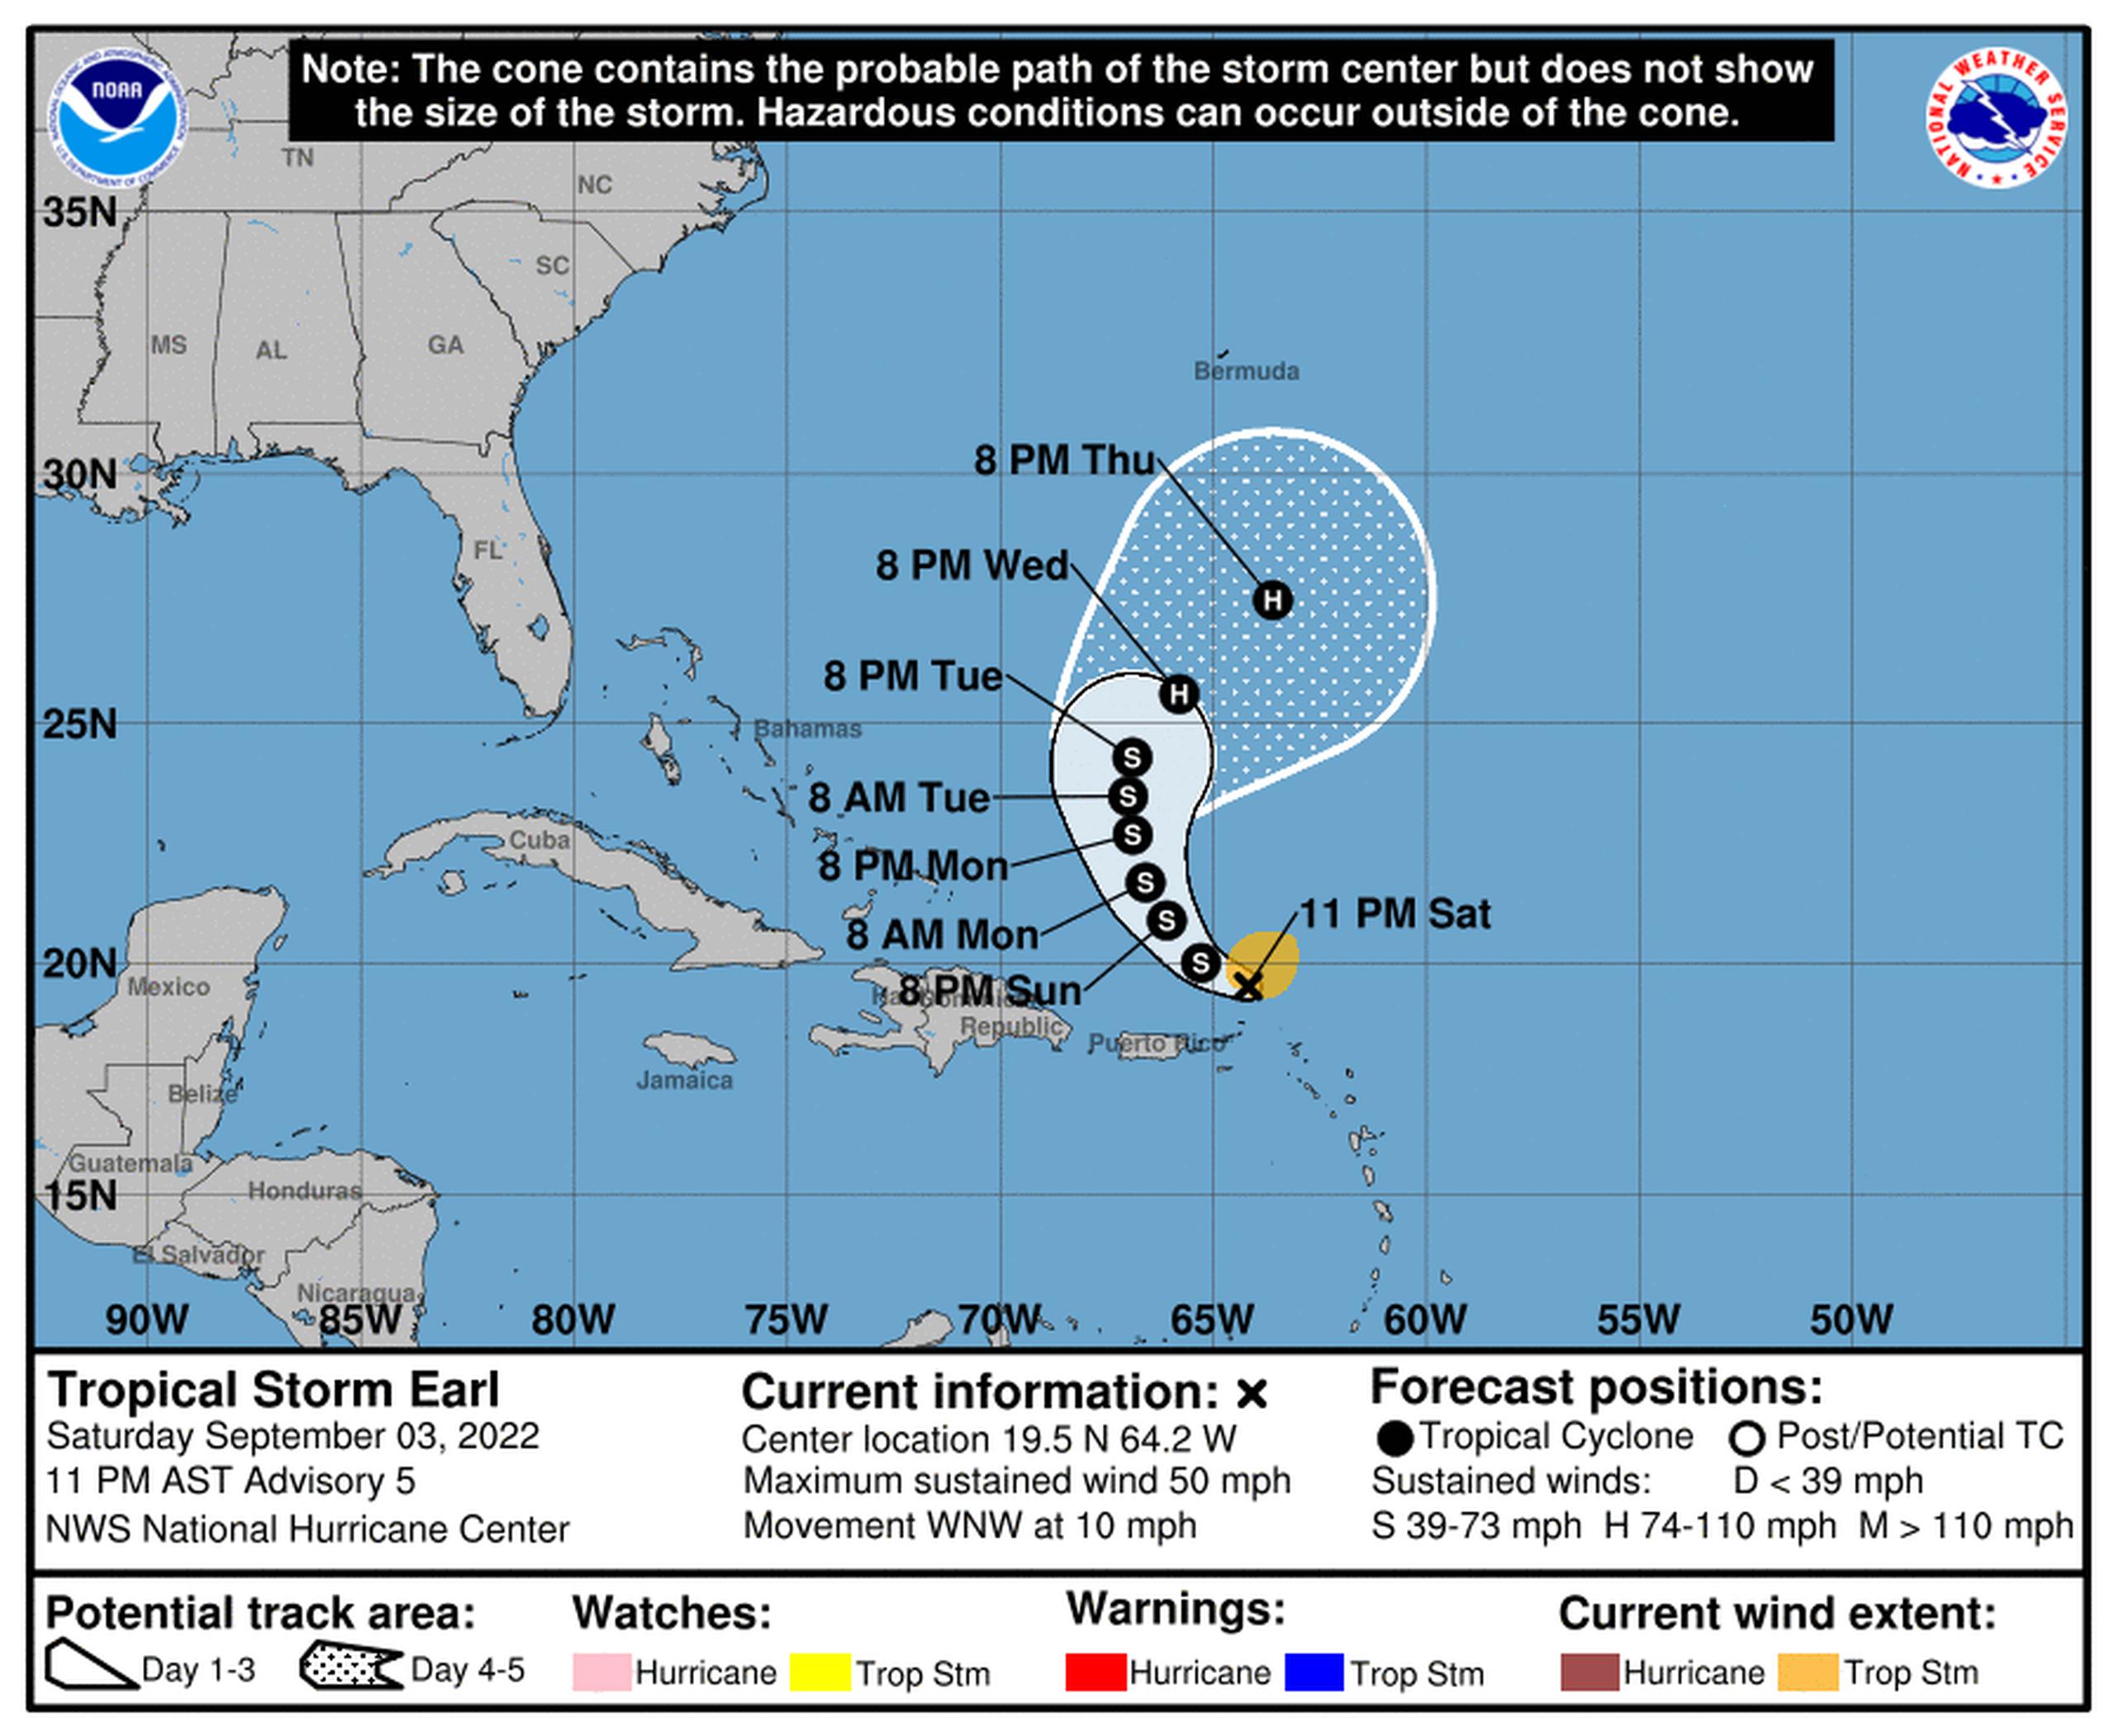 La tormenta tropical Earl continúa su ruta al oeste-noroeste a 10 millas por horas.